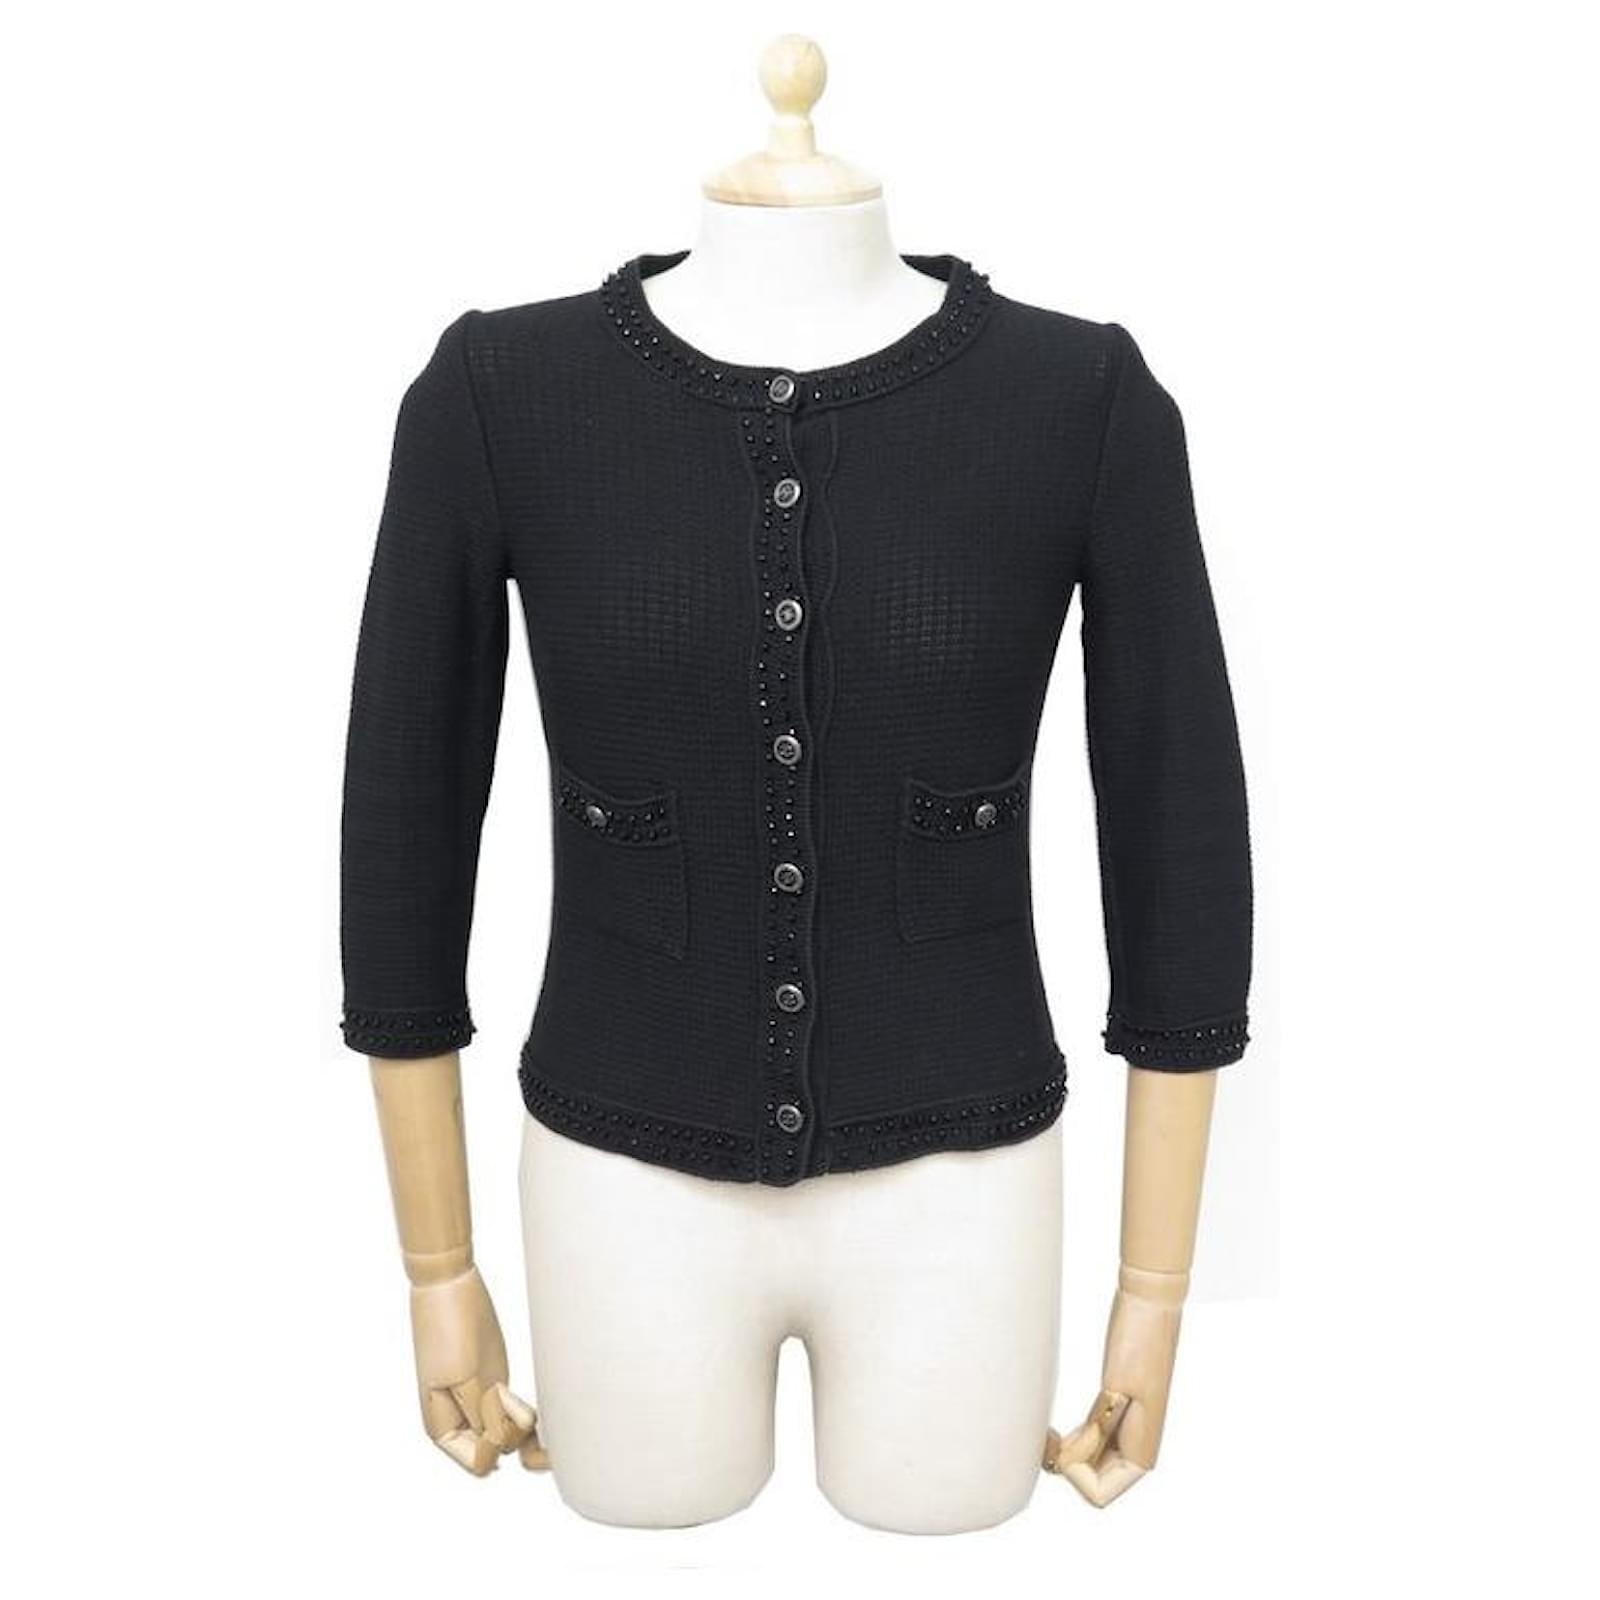 Knitwear Chanel Chanel P SWEATER30912 Cardigan Vest 36 S Button Logo CC Black Cotton Back Vest